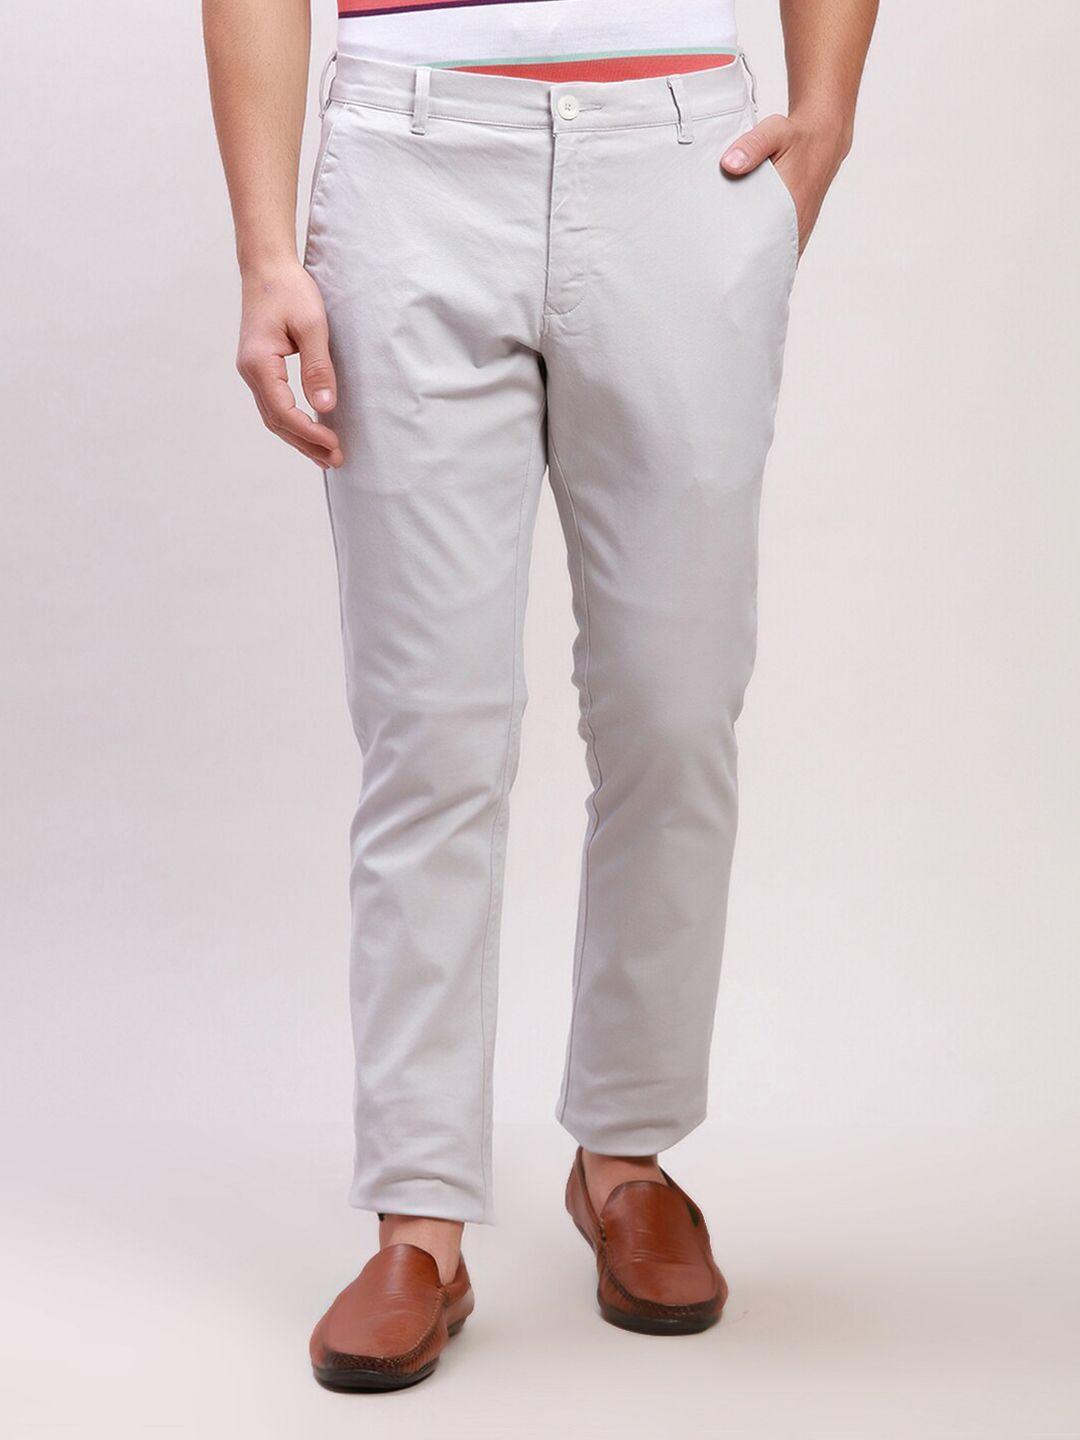 colorplus-men-slim-fit-mid-rise-regular-trousers